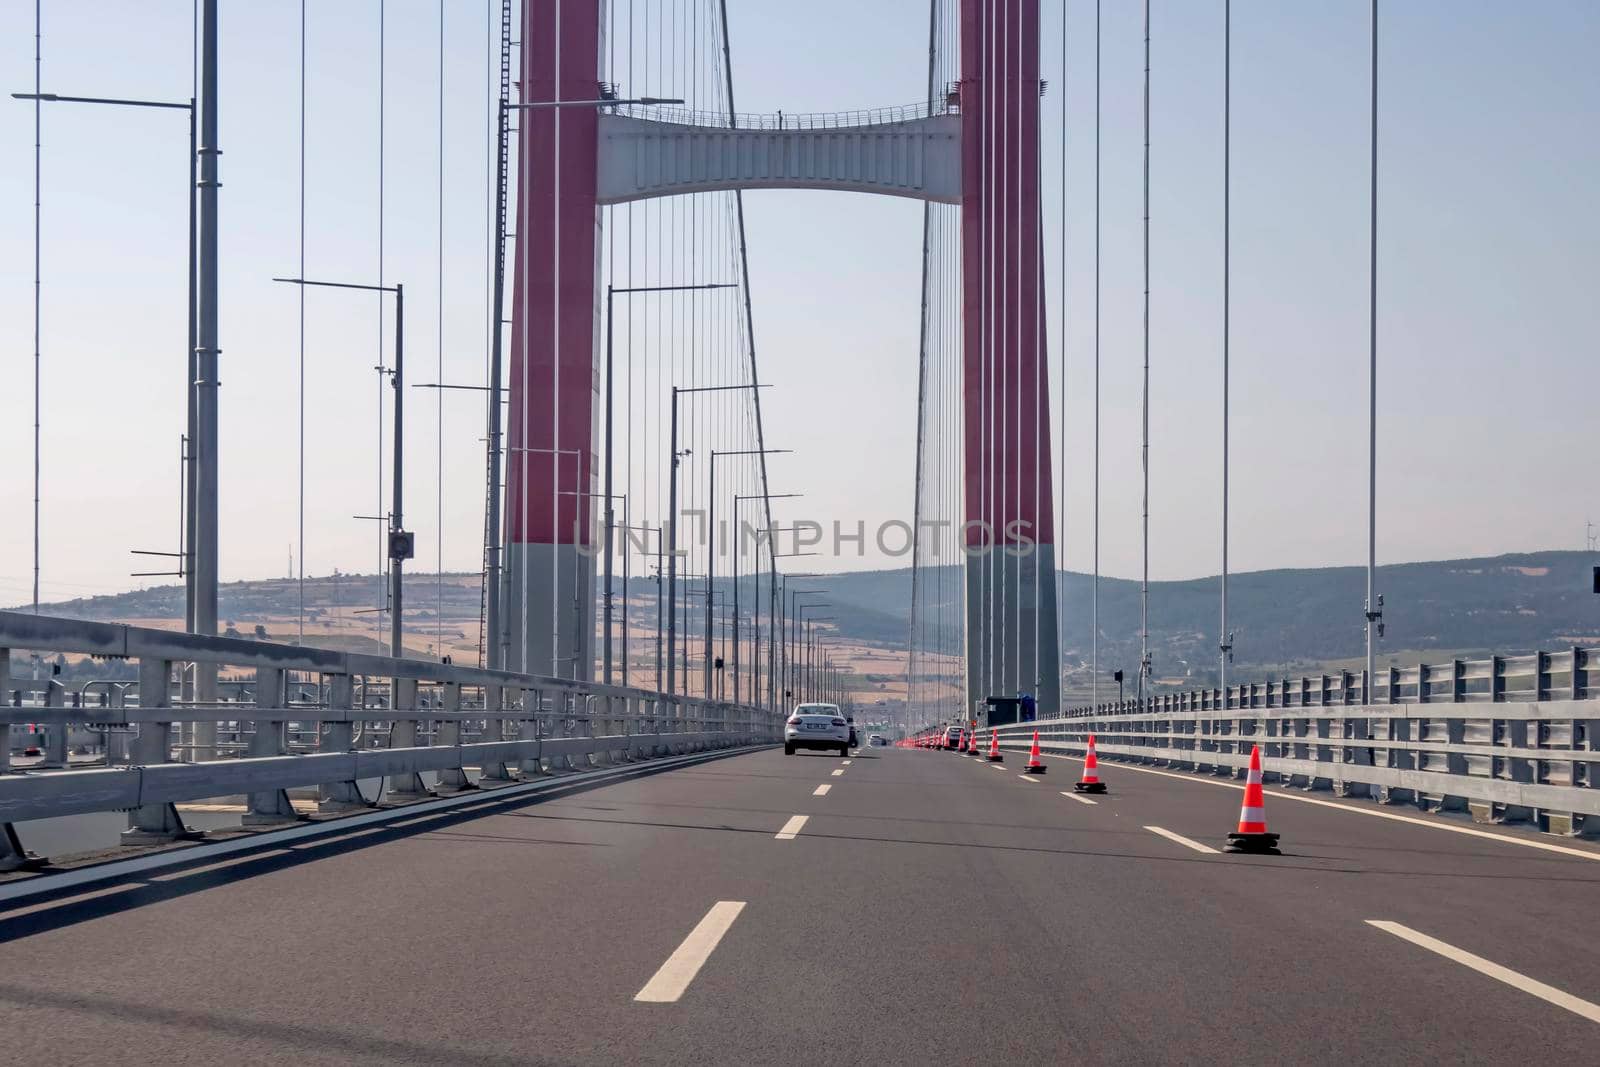 1915 Canakkale bridge in Dardanelles by yilmazsavaskandag